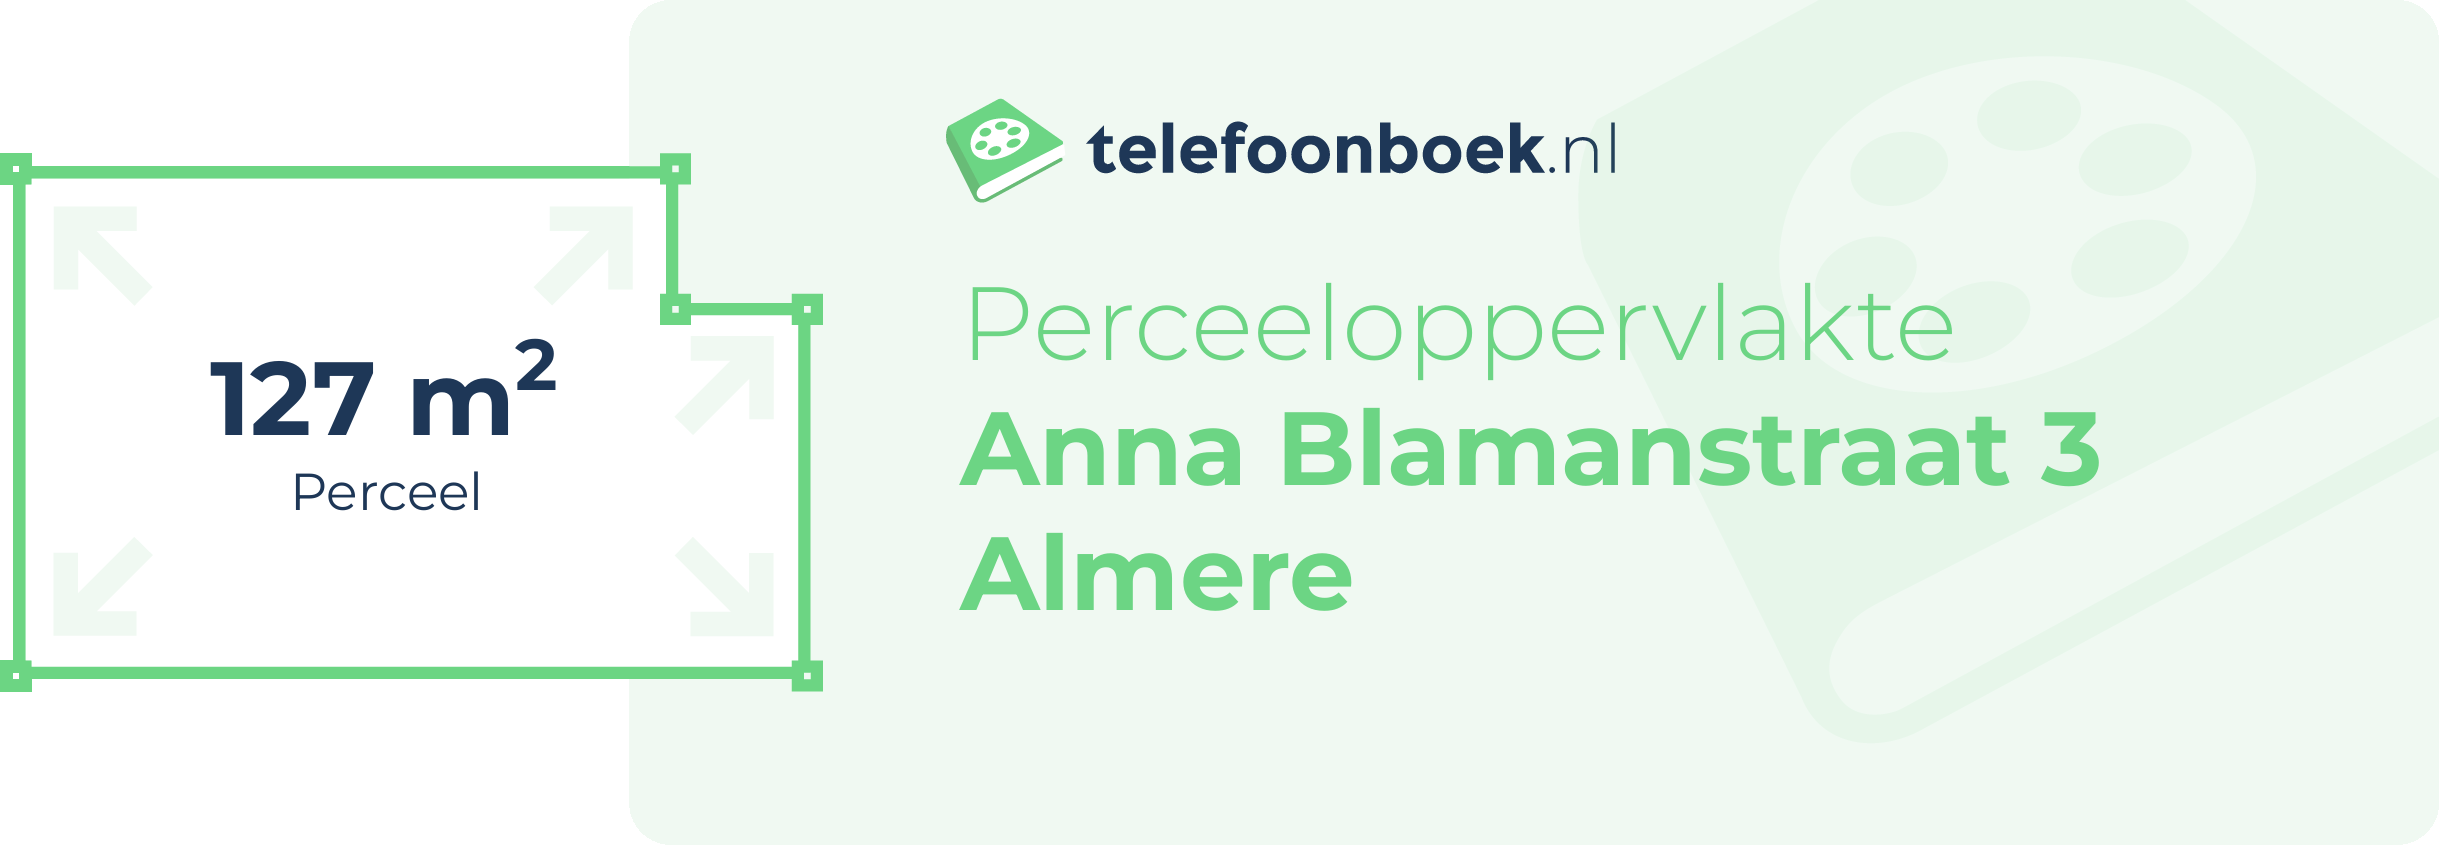 Perceeloppervlakte Anna Blamanstraat 3 Almere